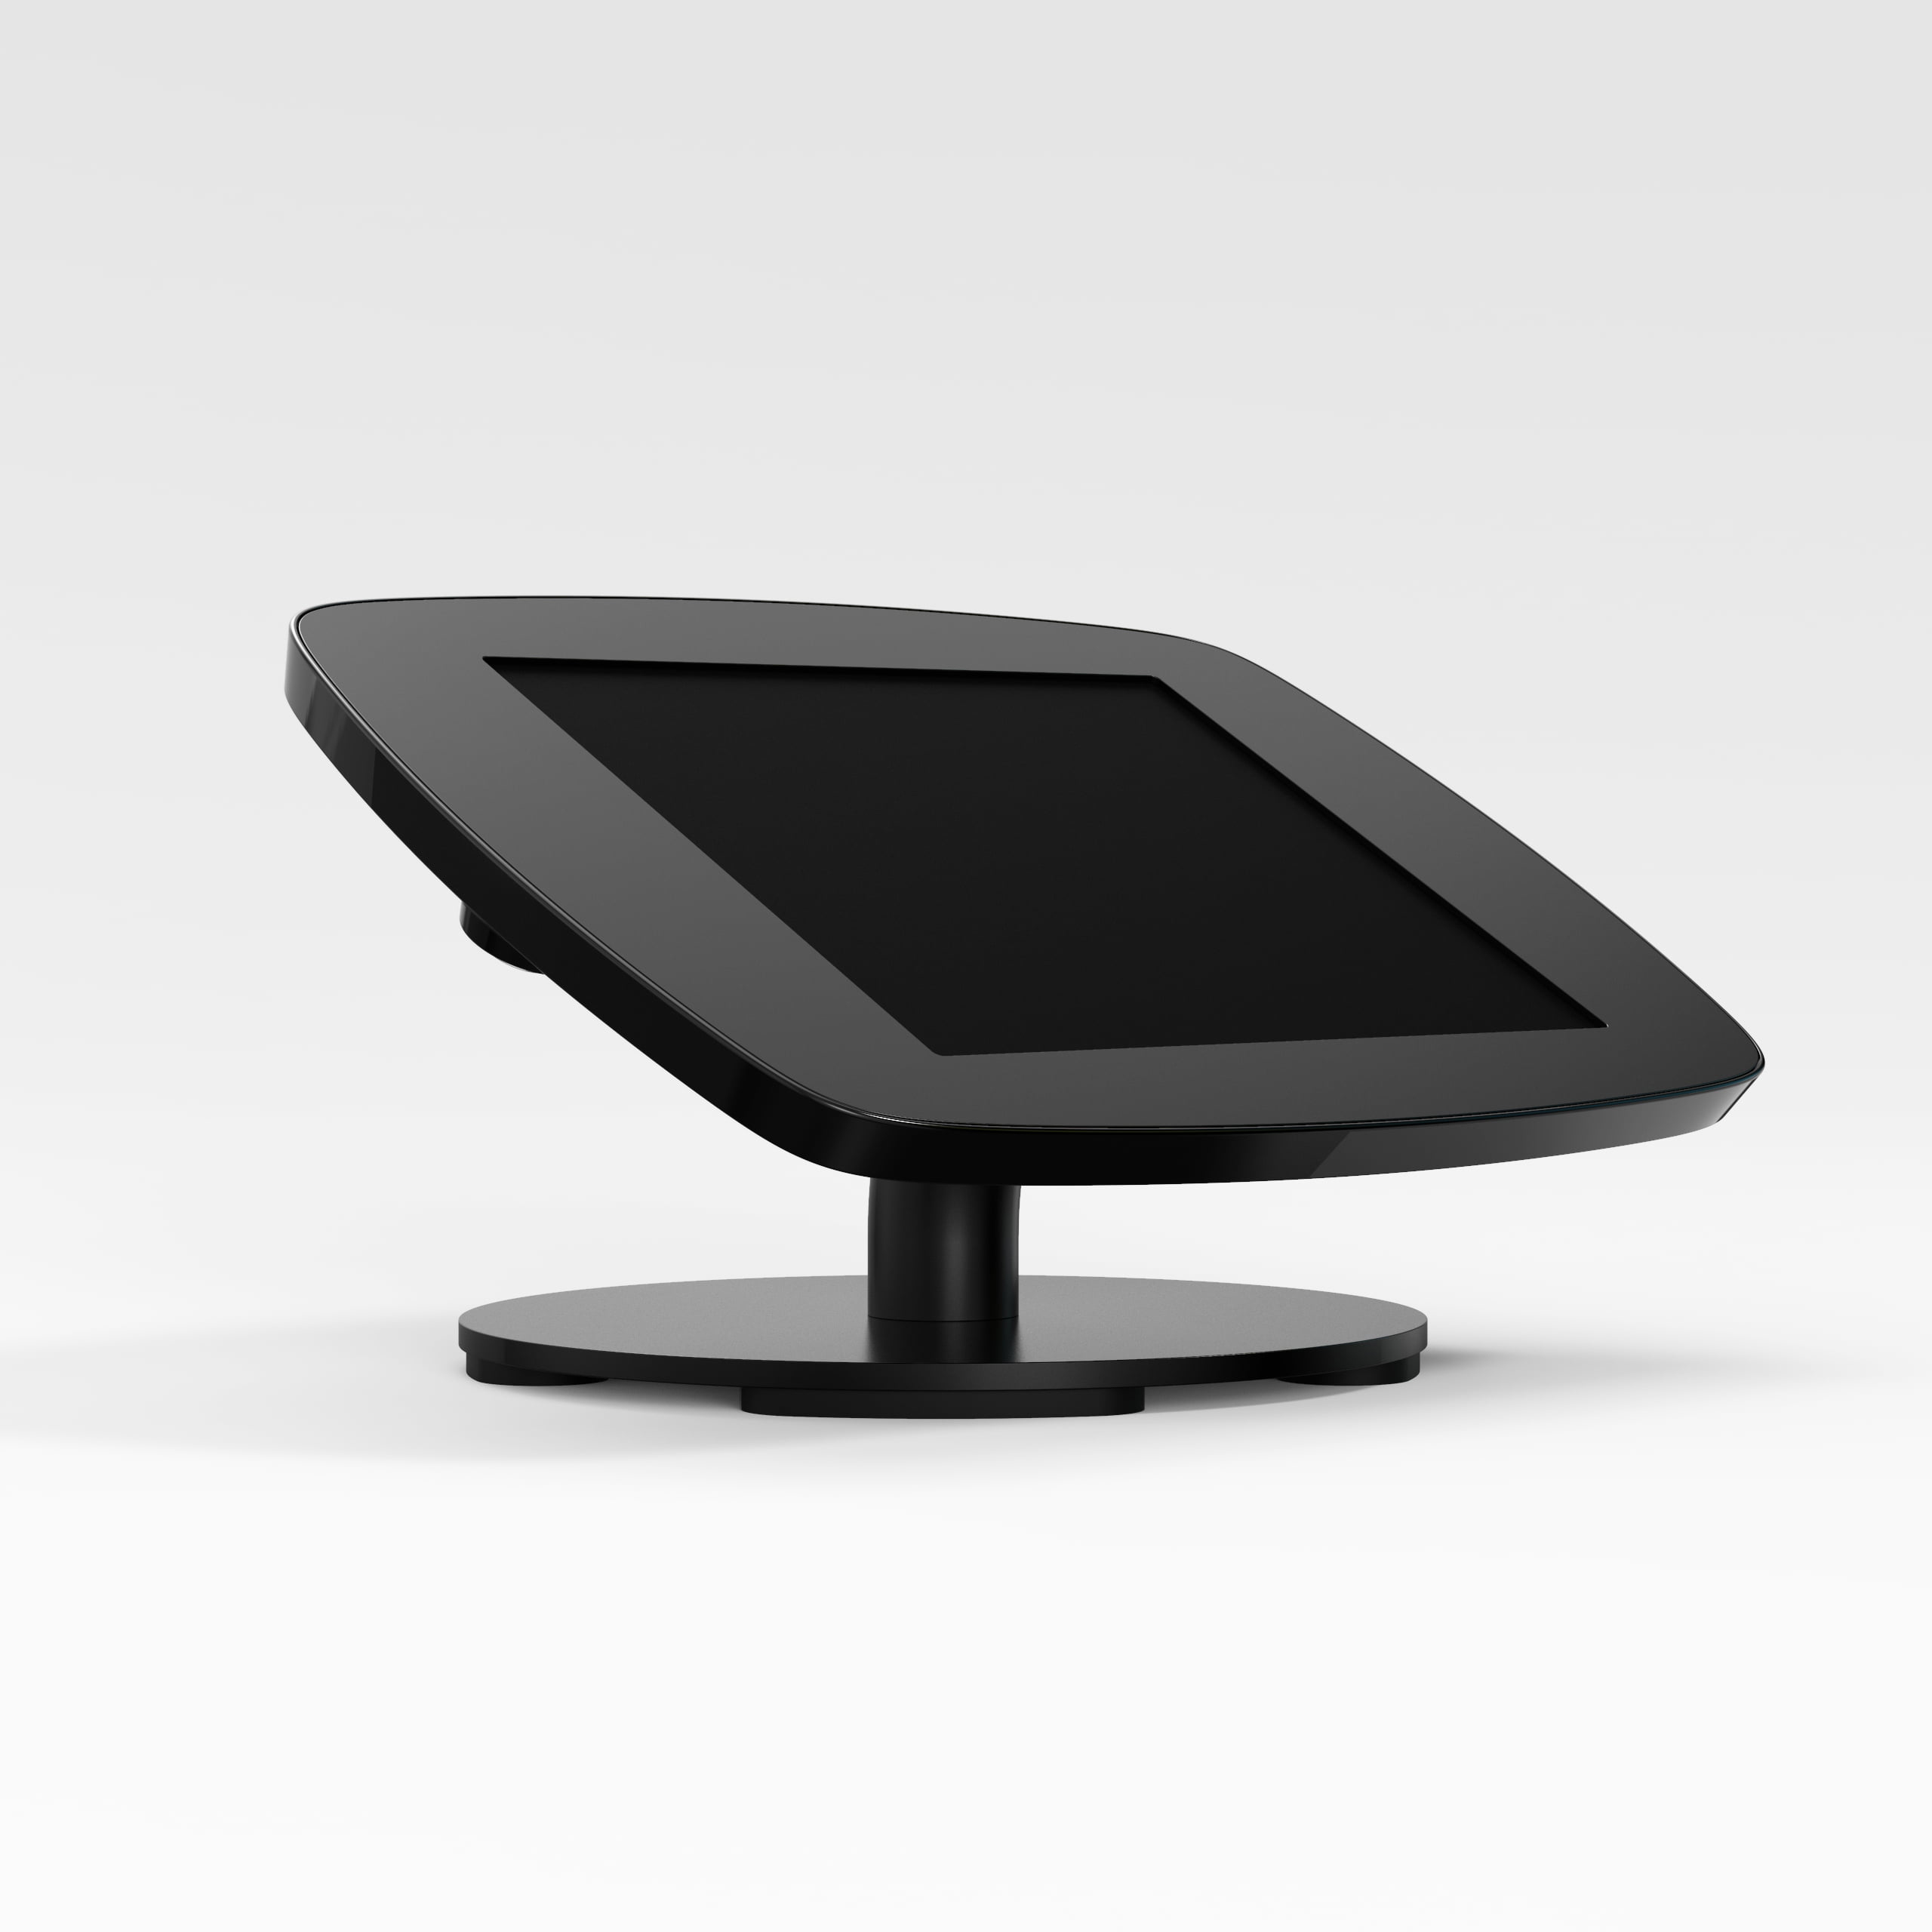 Bouncepad Counter supporto antifurto per tablet 25,6 cm [10.1] Nero (COUNTDBLKCLOSEDCAM/CLOSEDHOME A62)